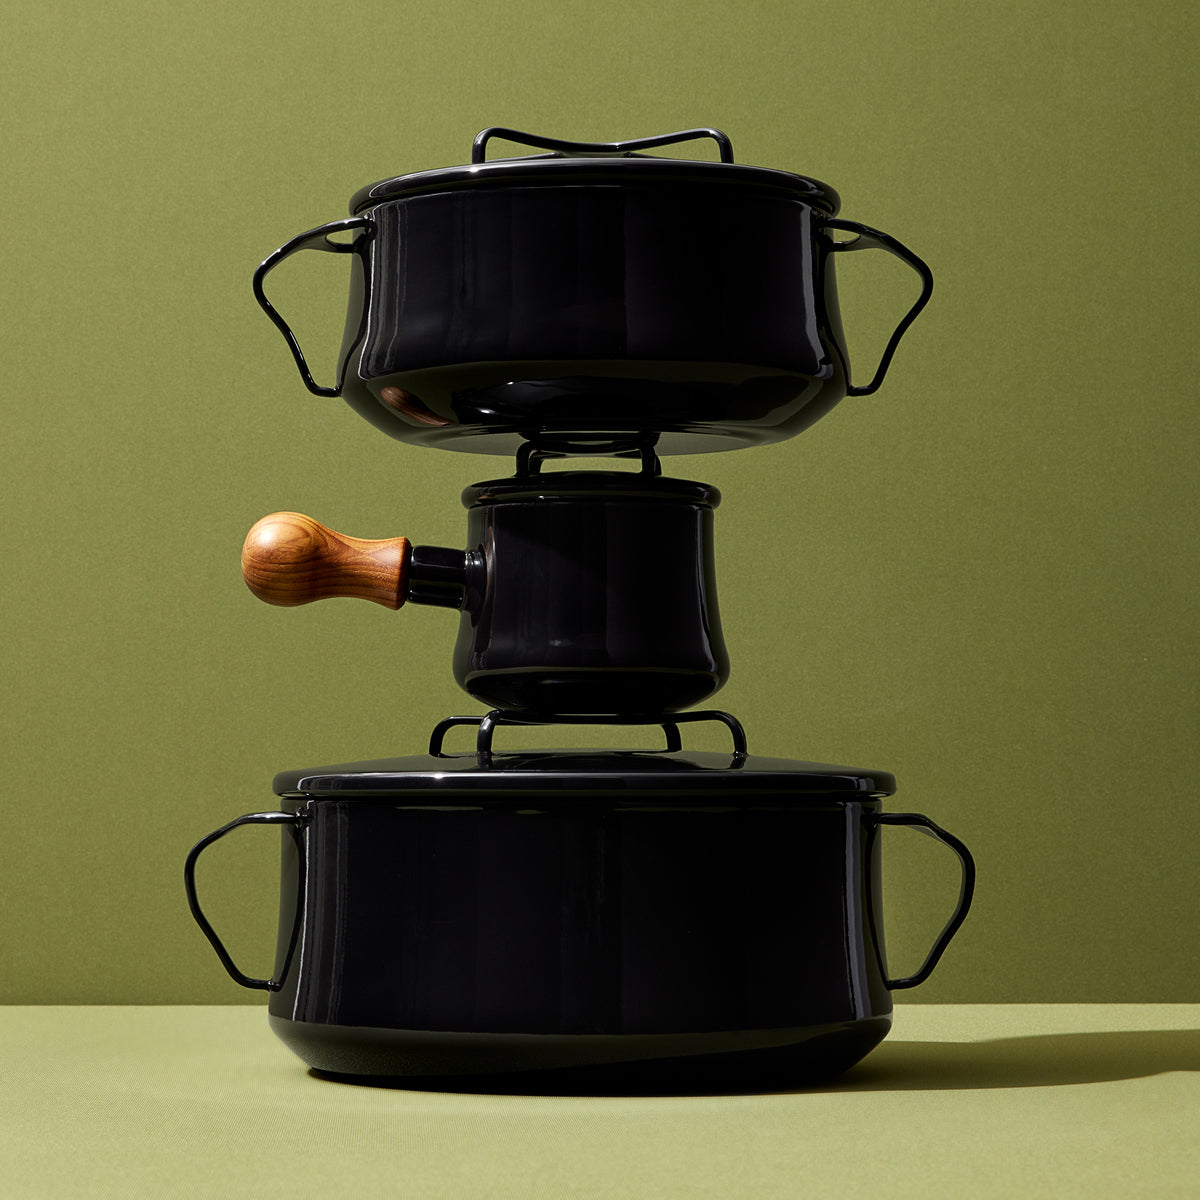 Købenstyle Black Cookware Collection – Dansk